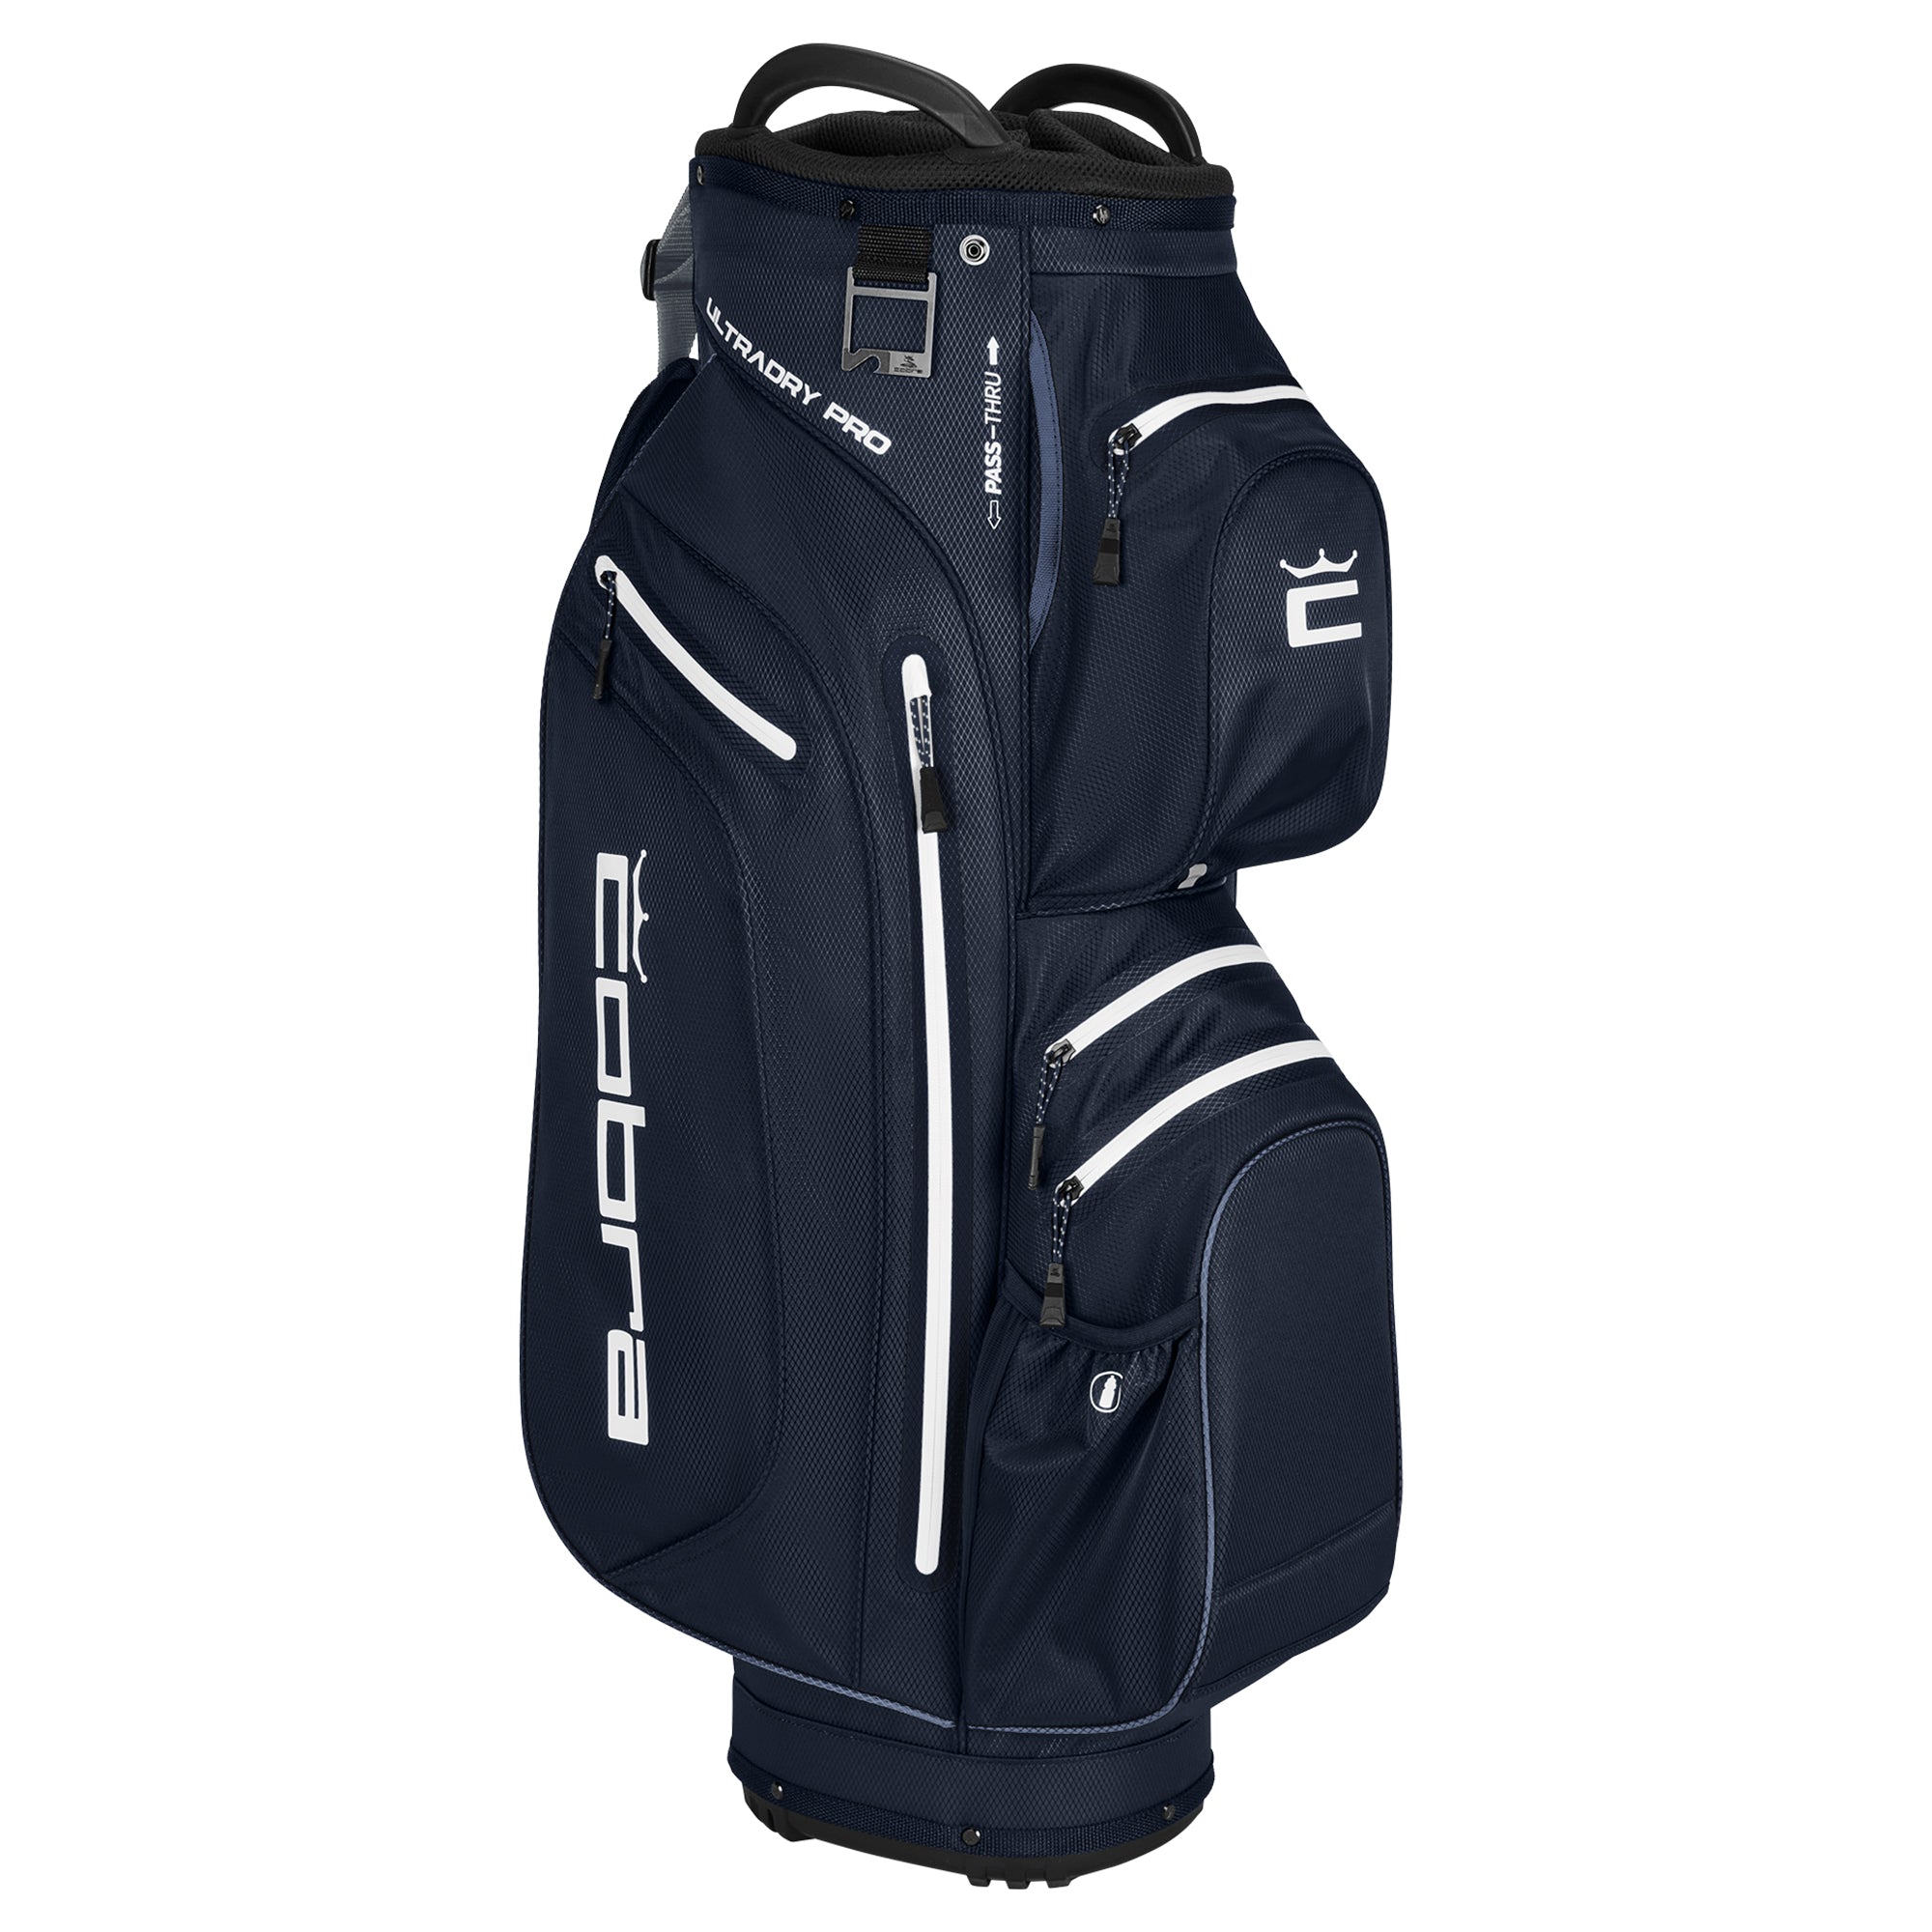 cobra-golf-ultradry-pro-cart-bag-909590-navy-blazer-white-03